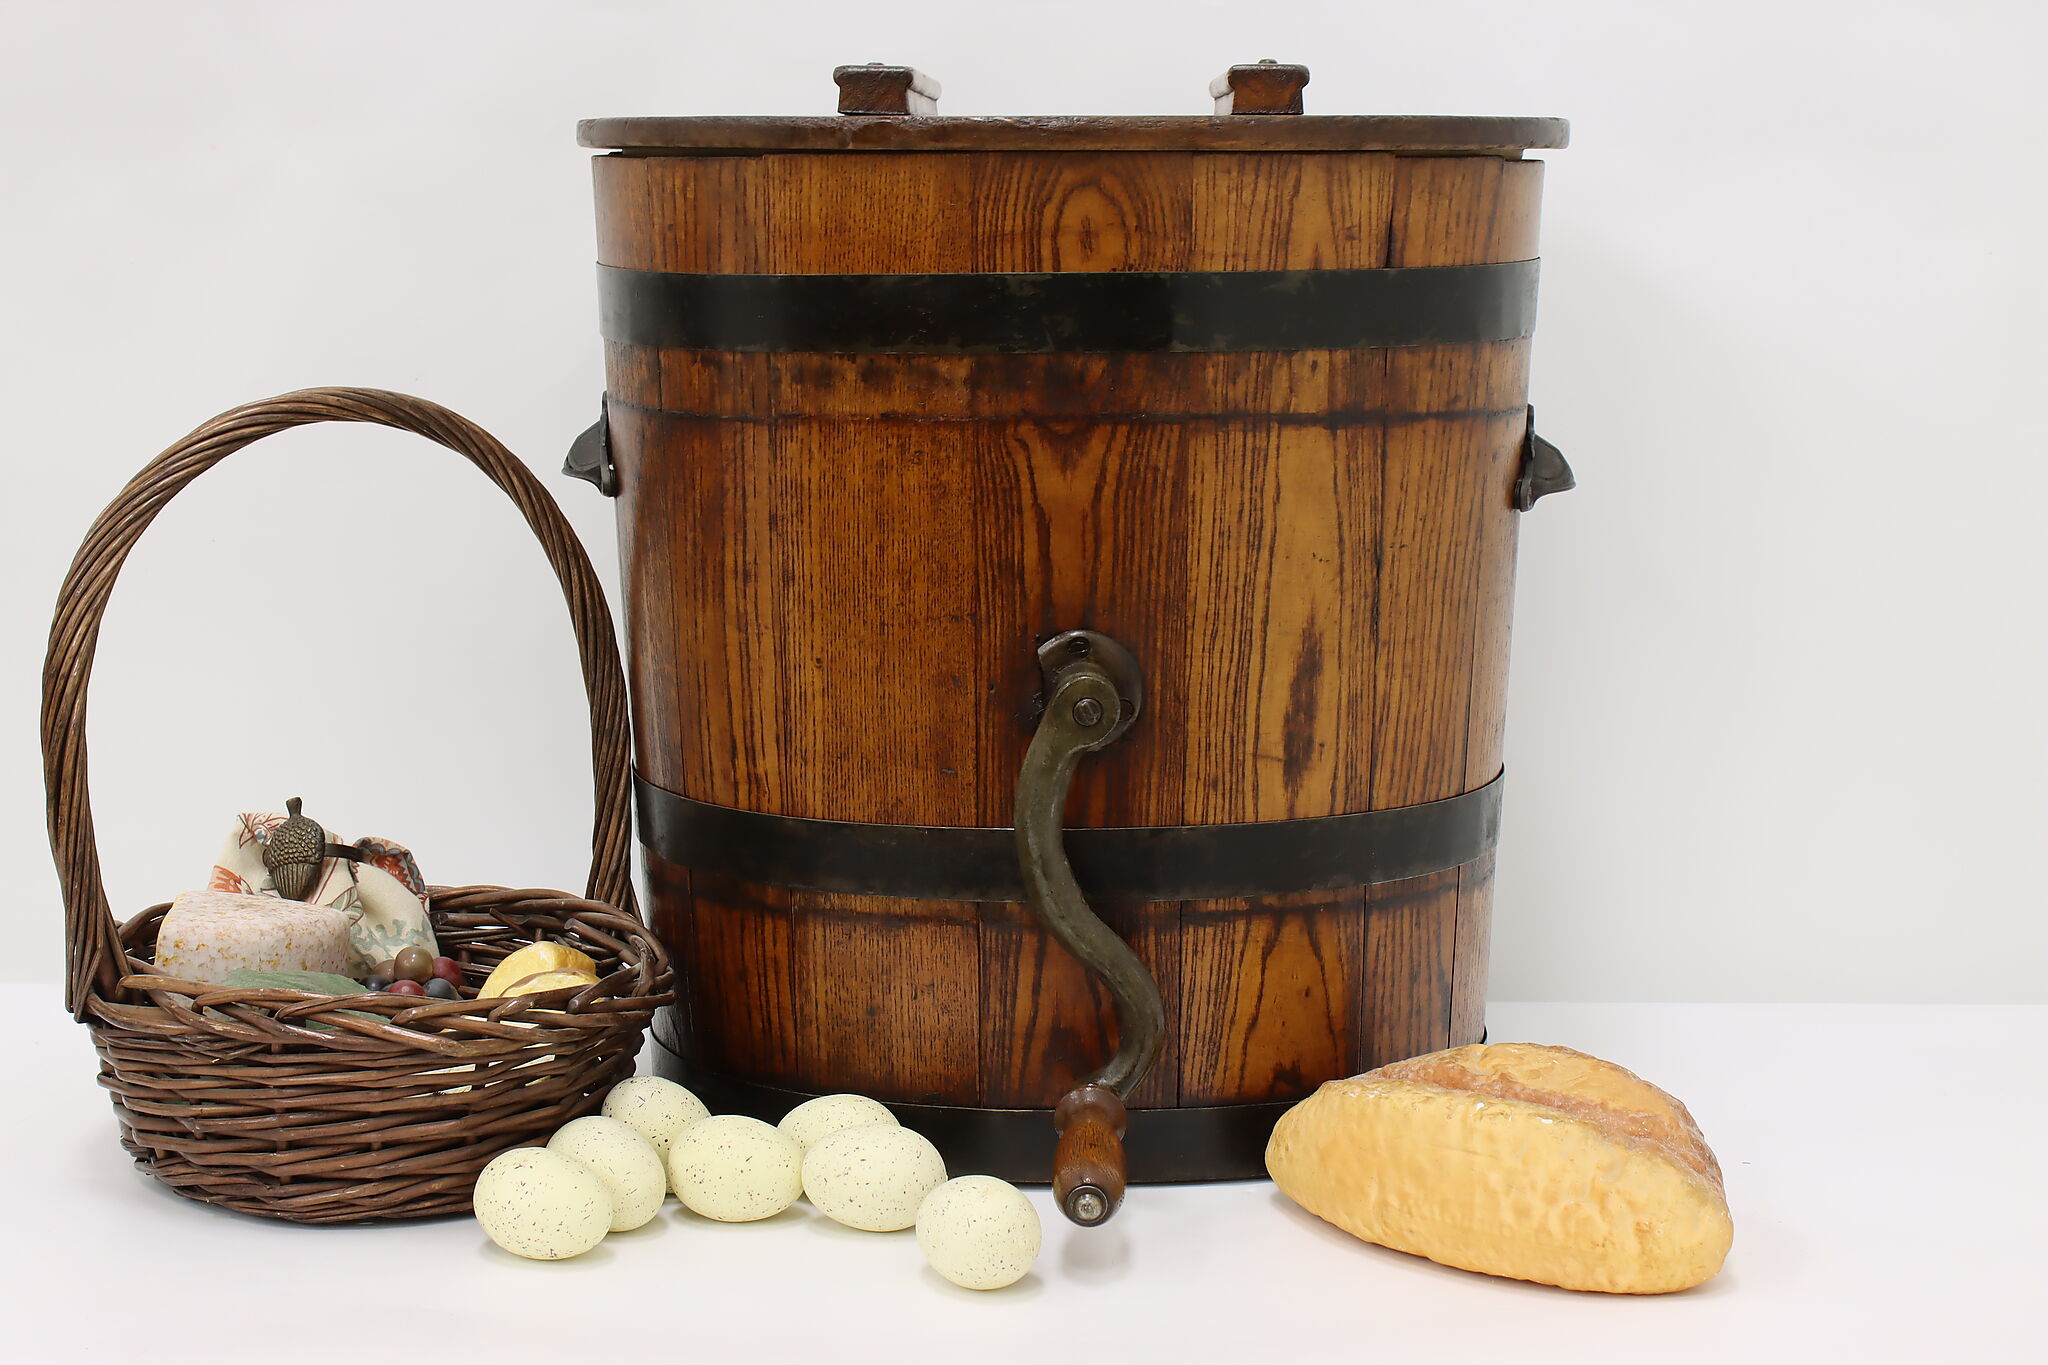 Antique Butter Churn, Wooden Butter Churn, Farmhouse Kitchen Decor